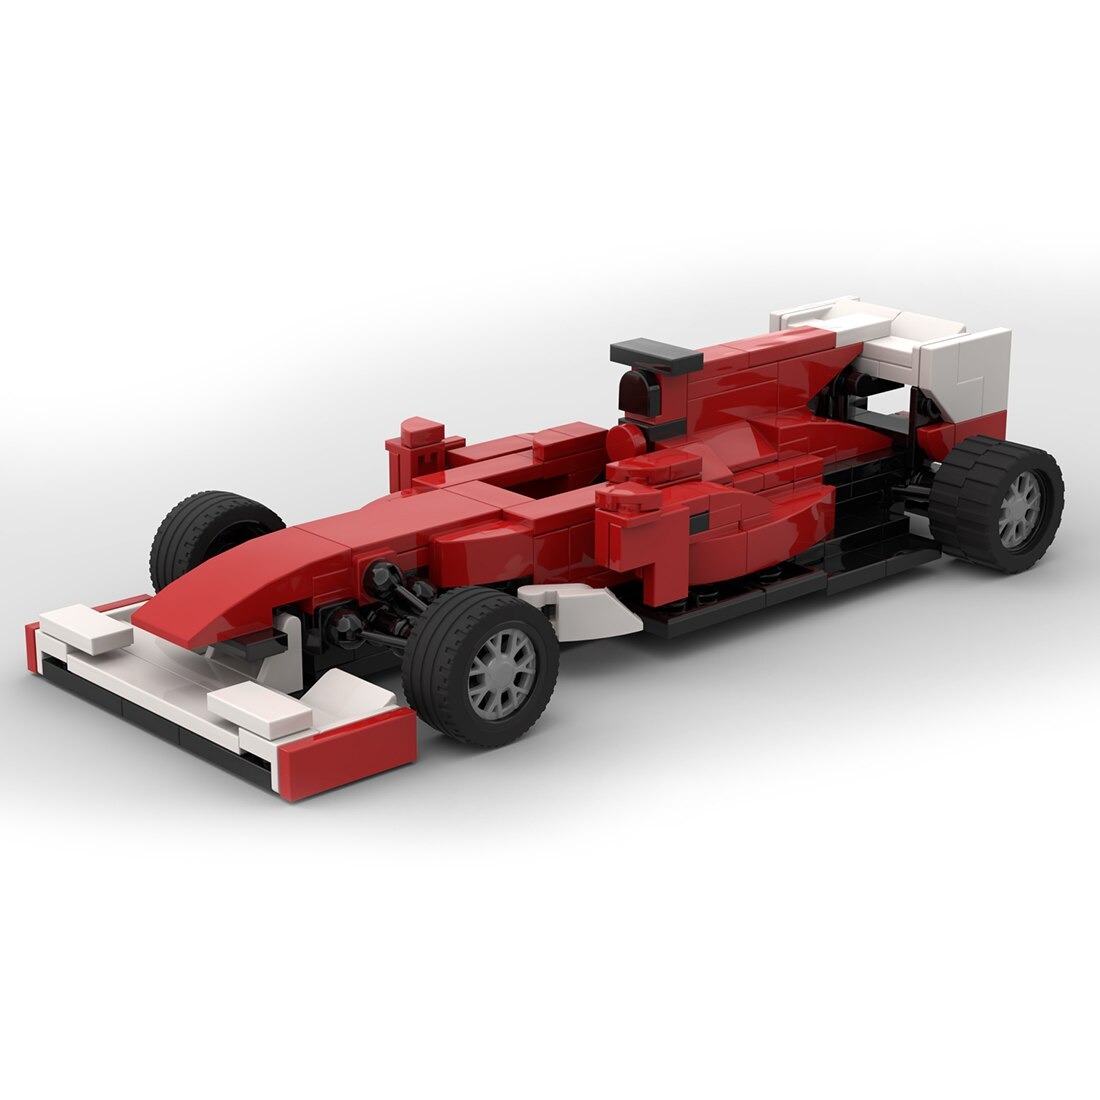 F10 Racing Car Moc 100267 5